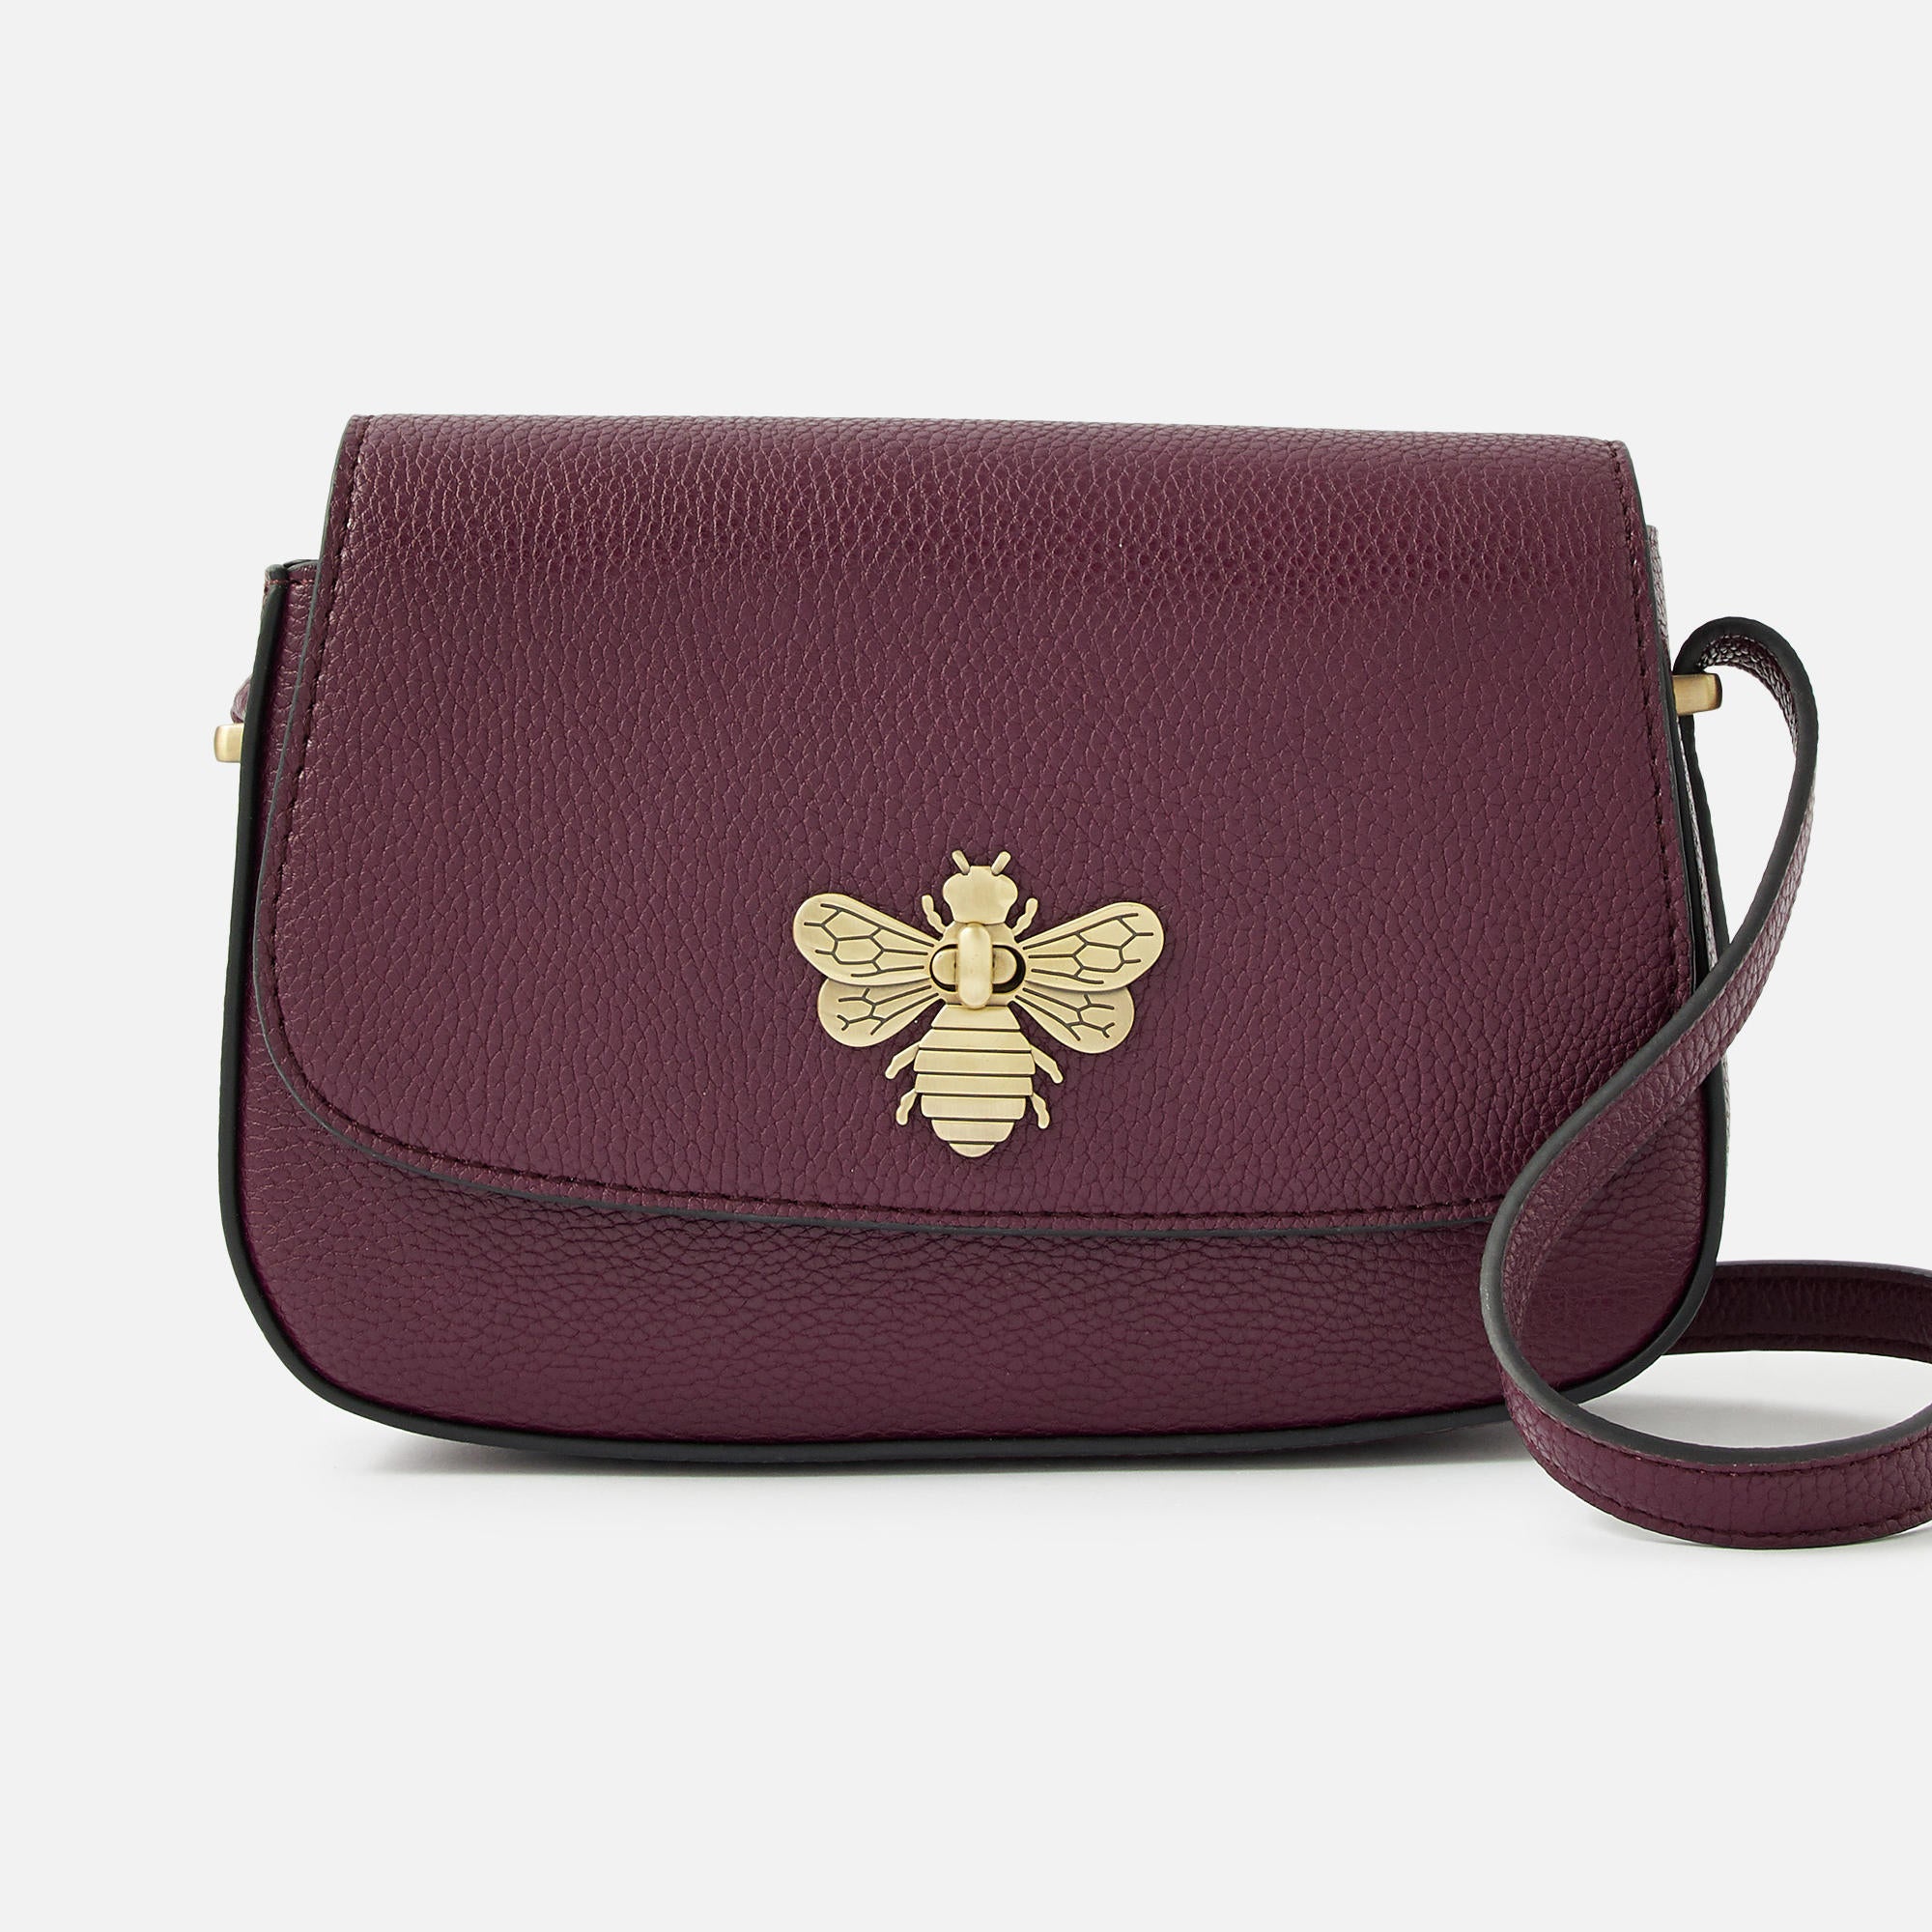 Accessorize London Women's Britney Bee Sling bag